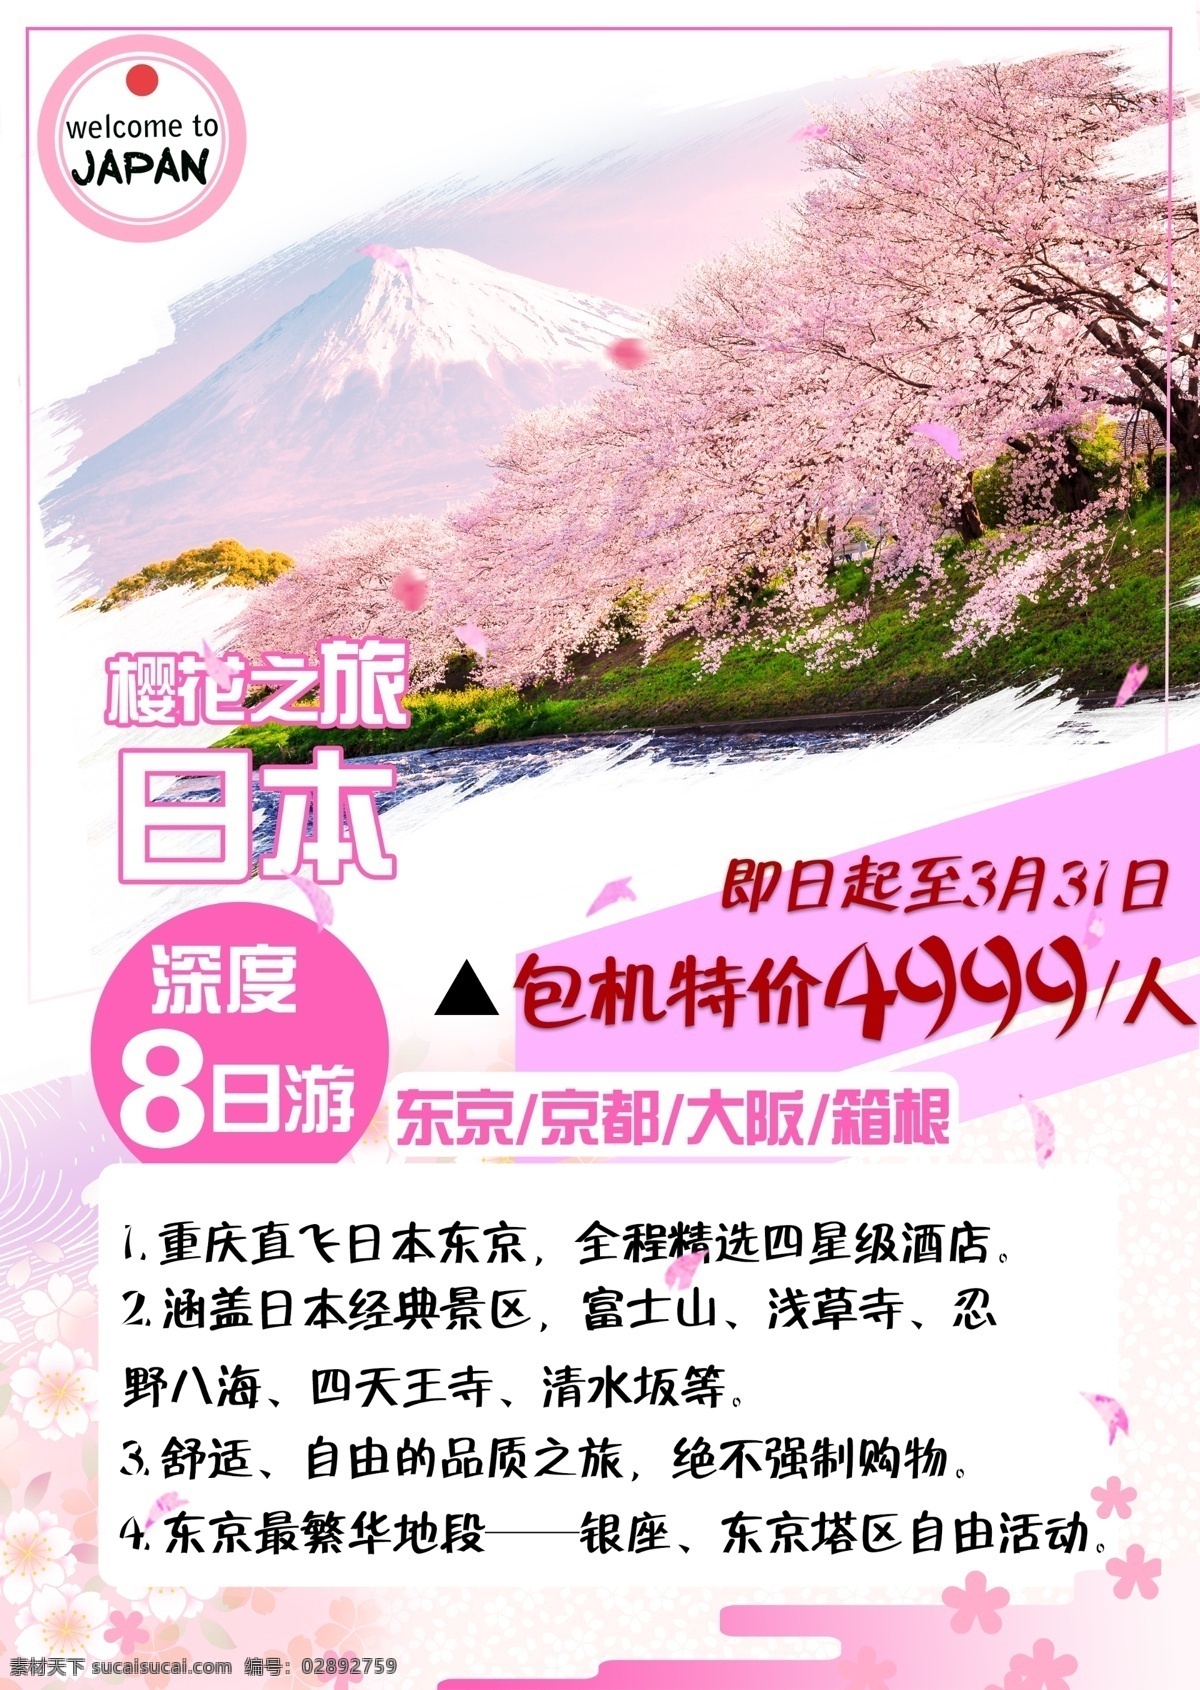 日本旅游 宣传单 页 宣传单页 dm